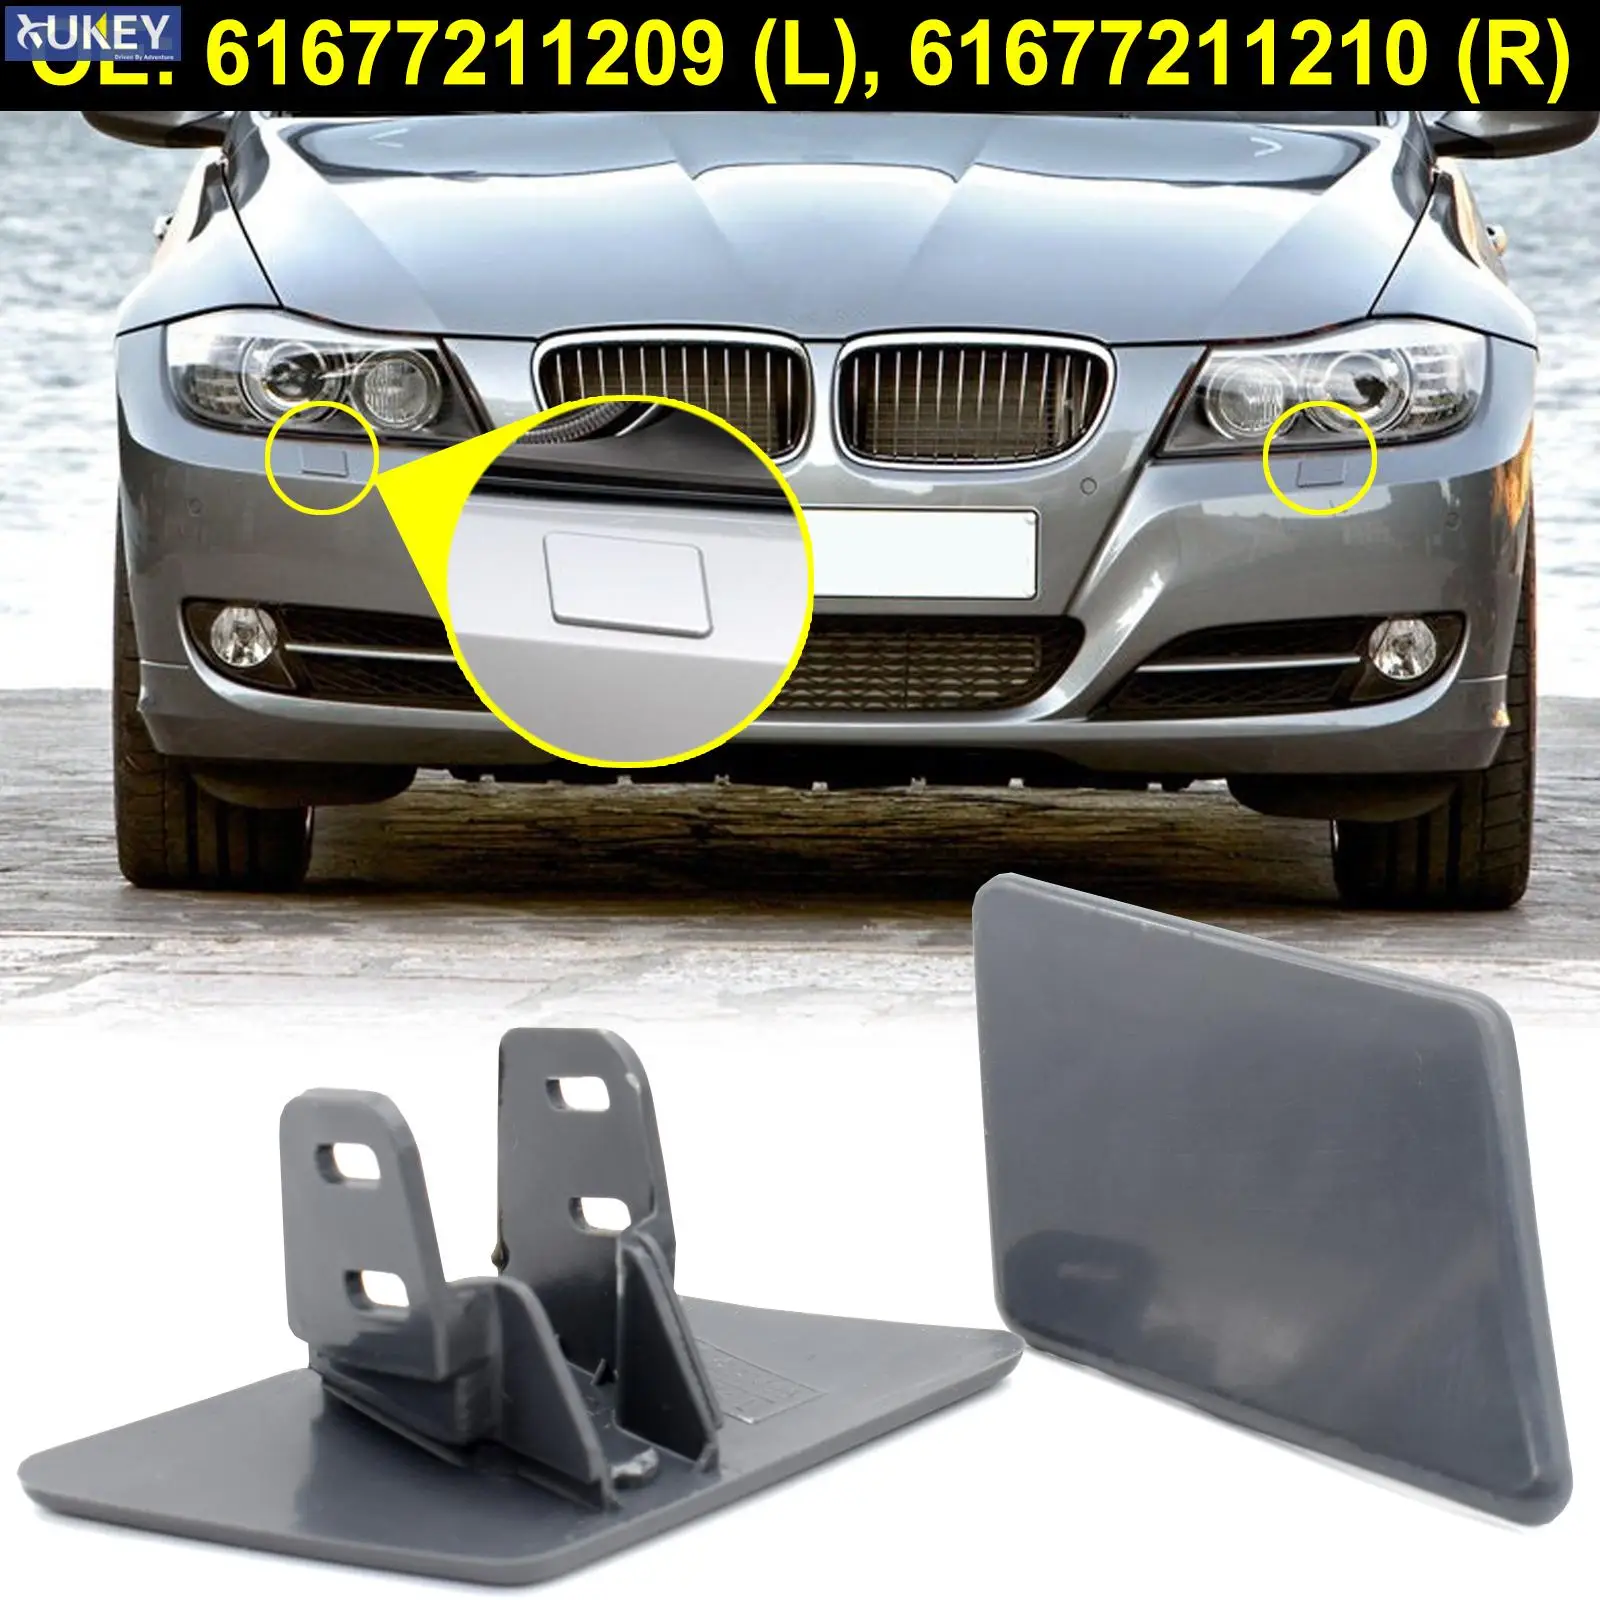 For BMW E90 E91 328xi 320i 325i 335i 325xi Front Bumper Headlight Washer Nozzle Cover R L Unpainted Cap 61677211209 61677211210